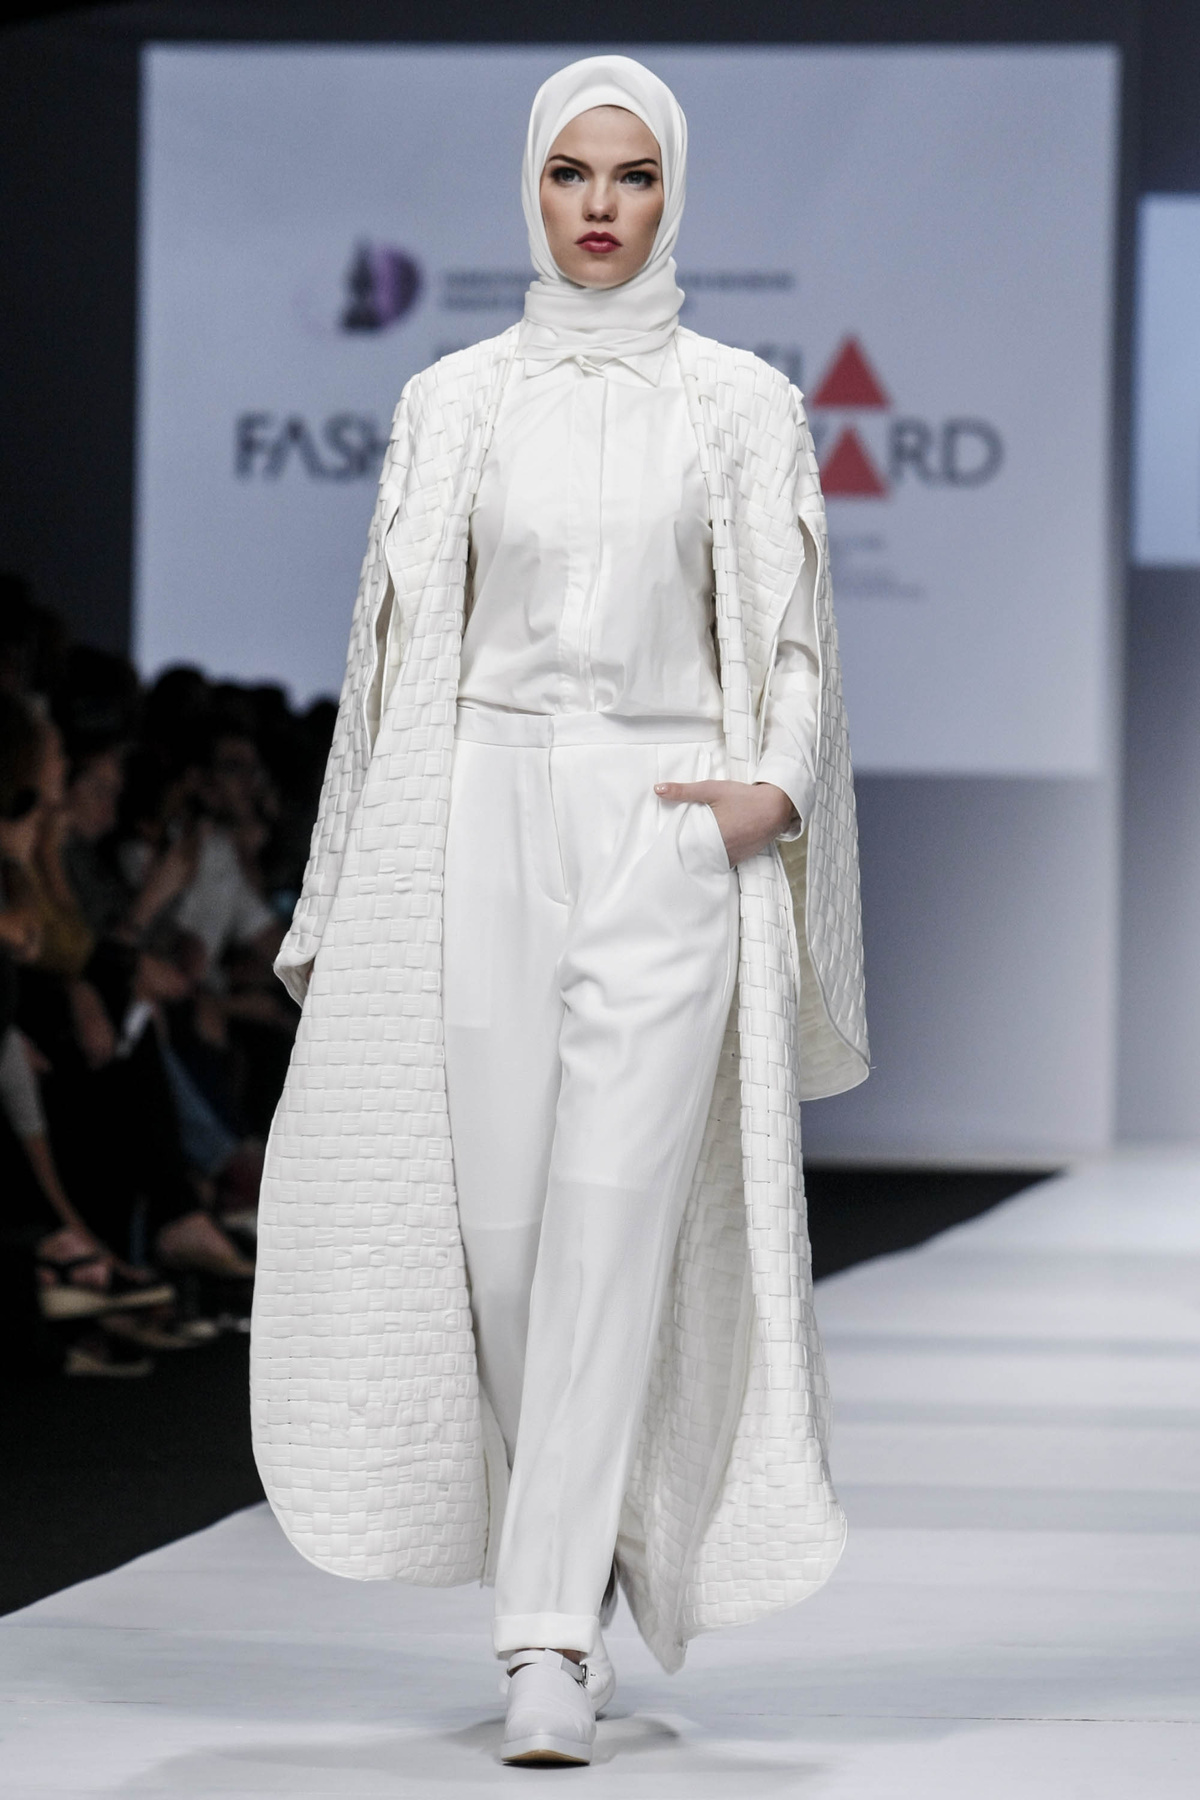 Ez a fekete-fehér csíkos kabát pedig 29.990 forintba kerül a H&M üzleteiben.